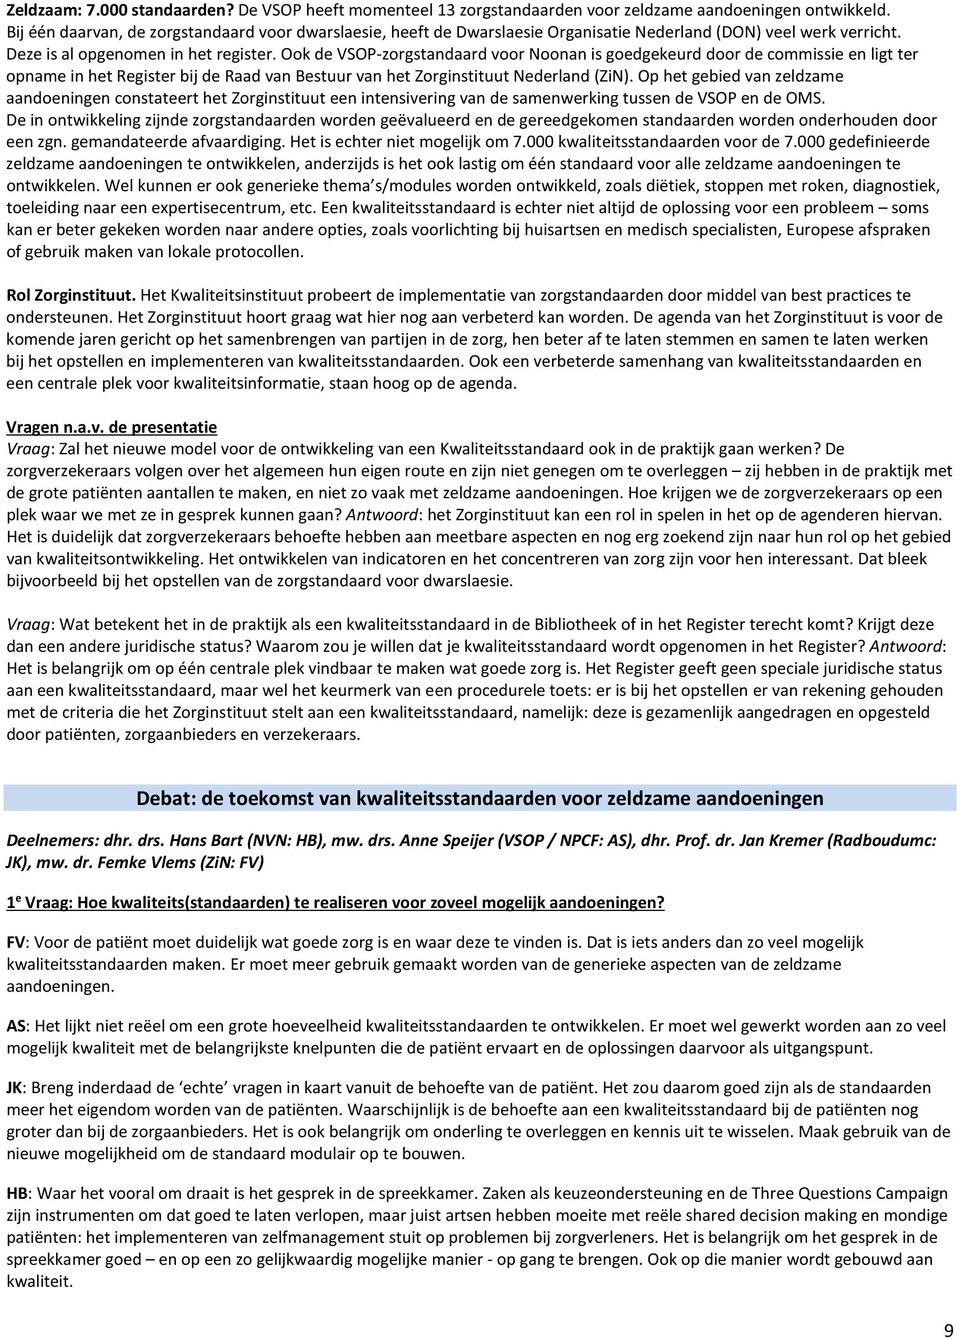 Ook de VSOP-zorgstandaard voor Noonan is goedgekeurd door de commissie en ligt ter opname in het Register bij de Raad van Bestuur van het Zorginstituut Nederland (ZiN).